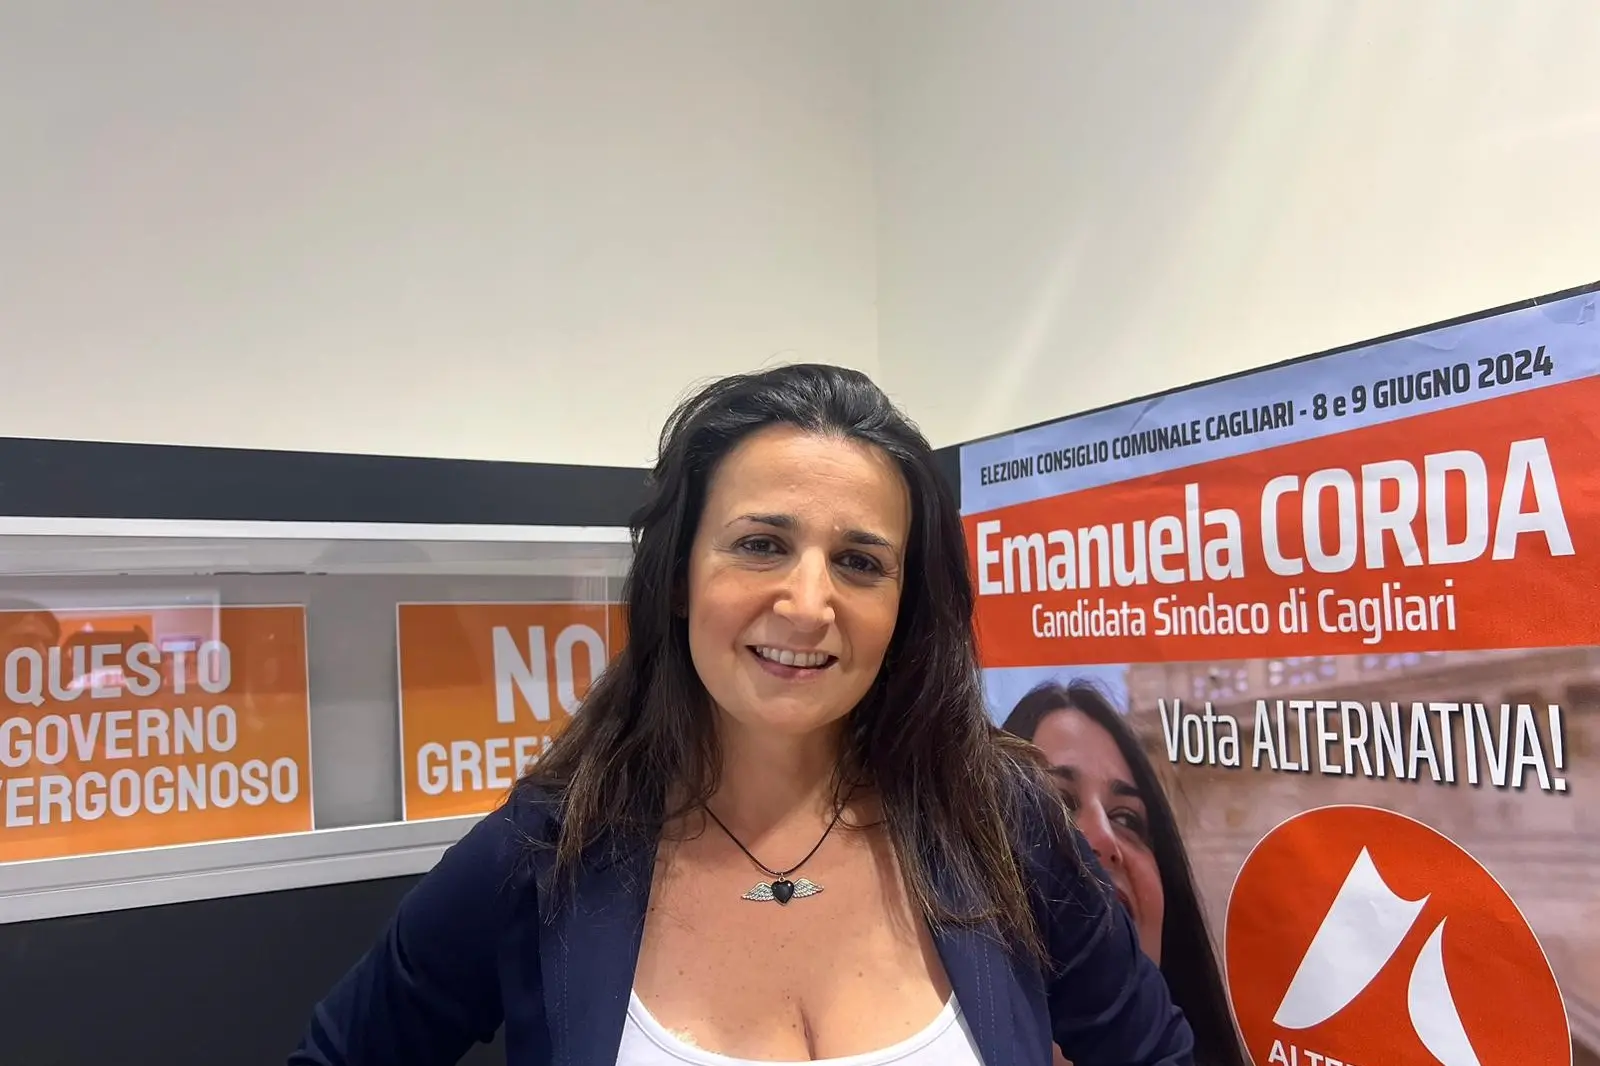 Emanuela Corda